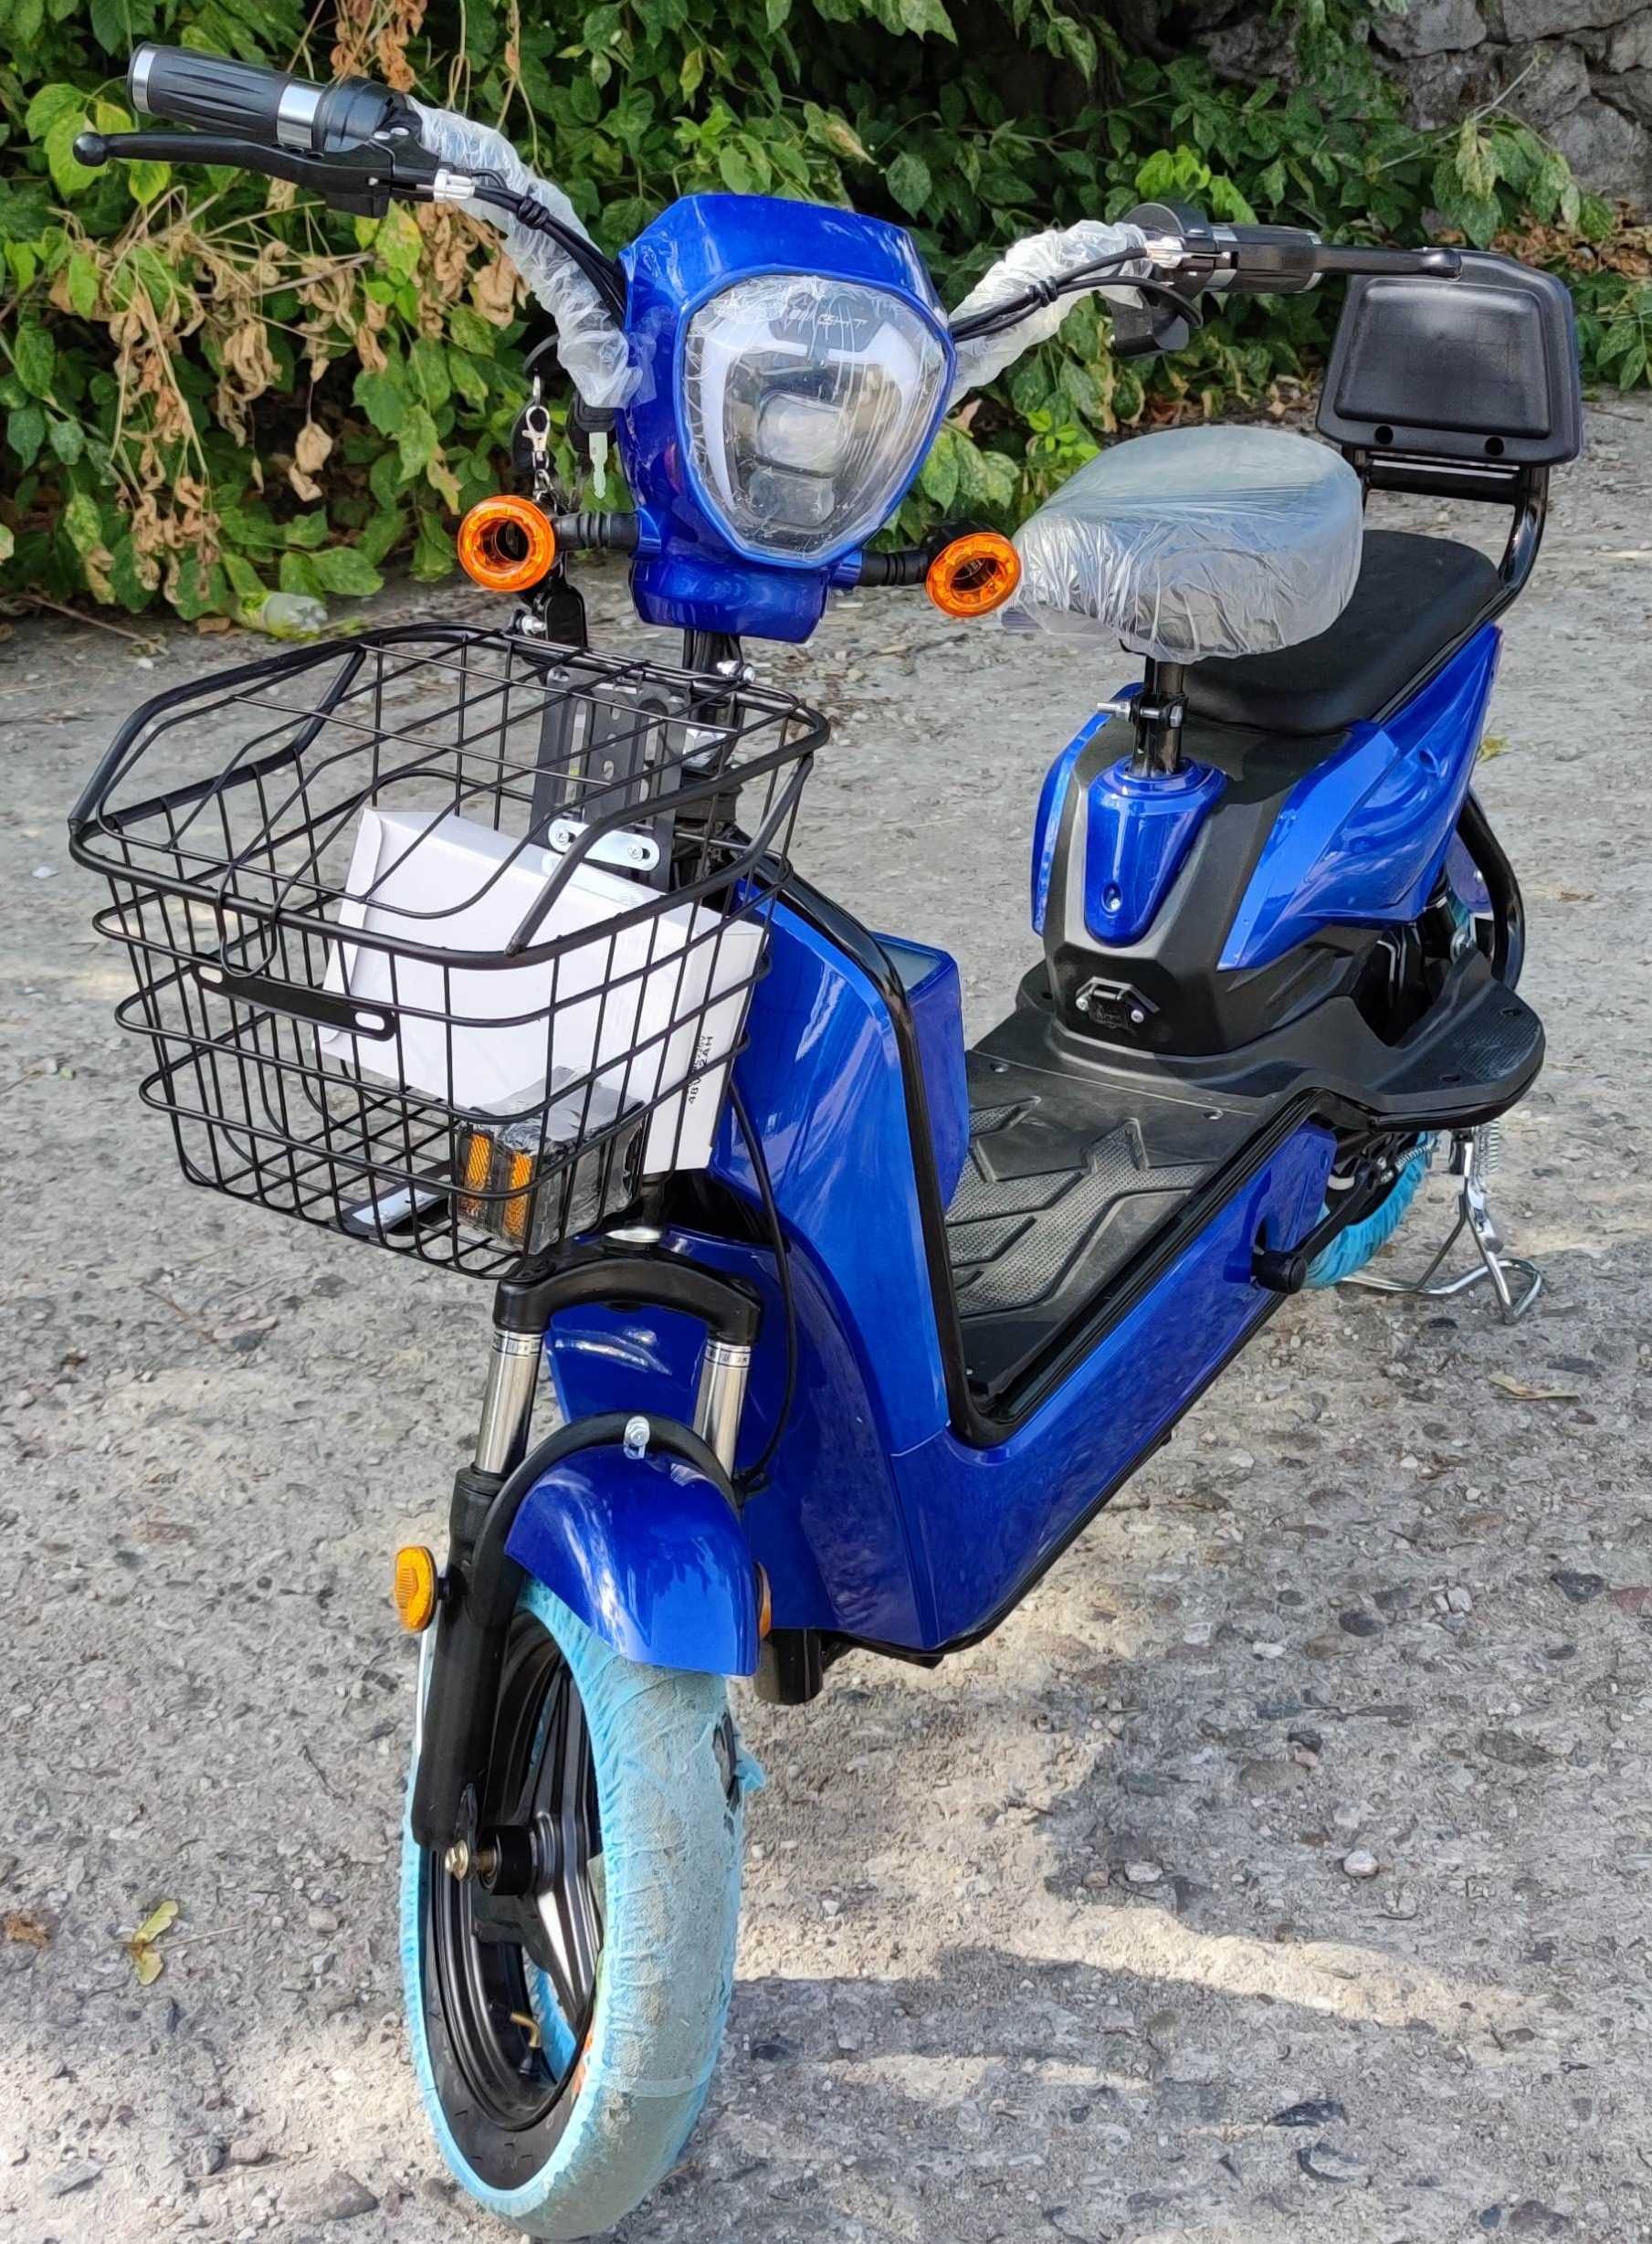 Електрически скутер EcoWay модел JY 450W мотор син цвят